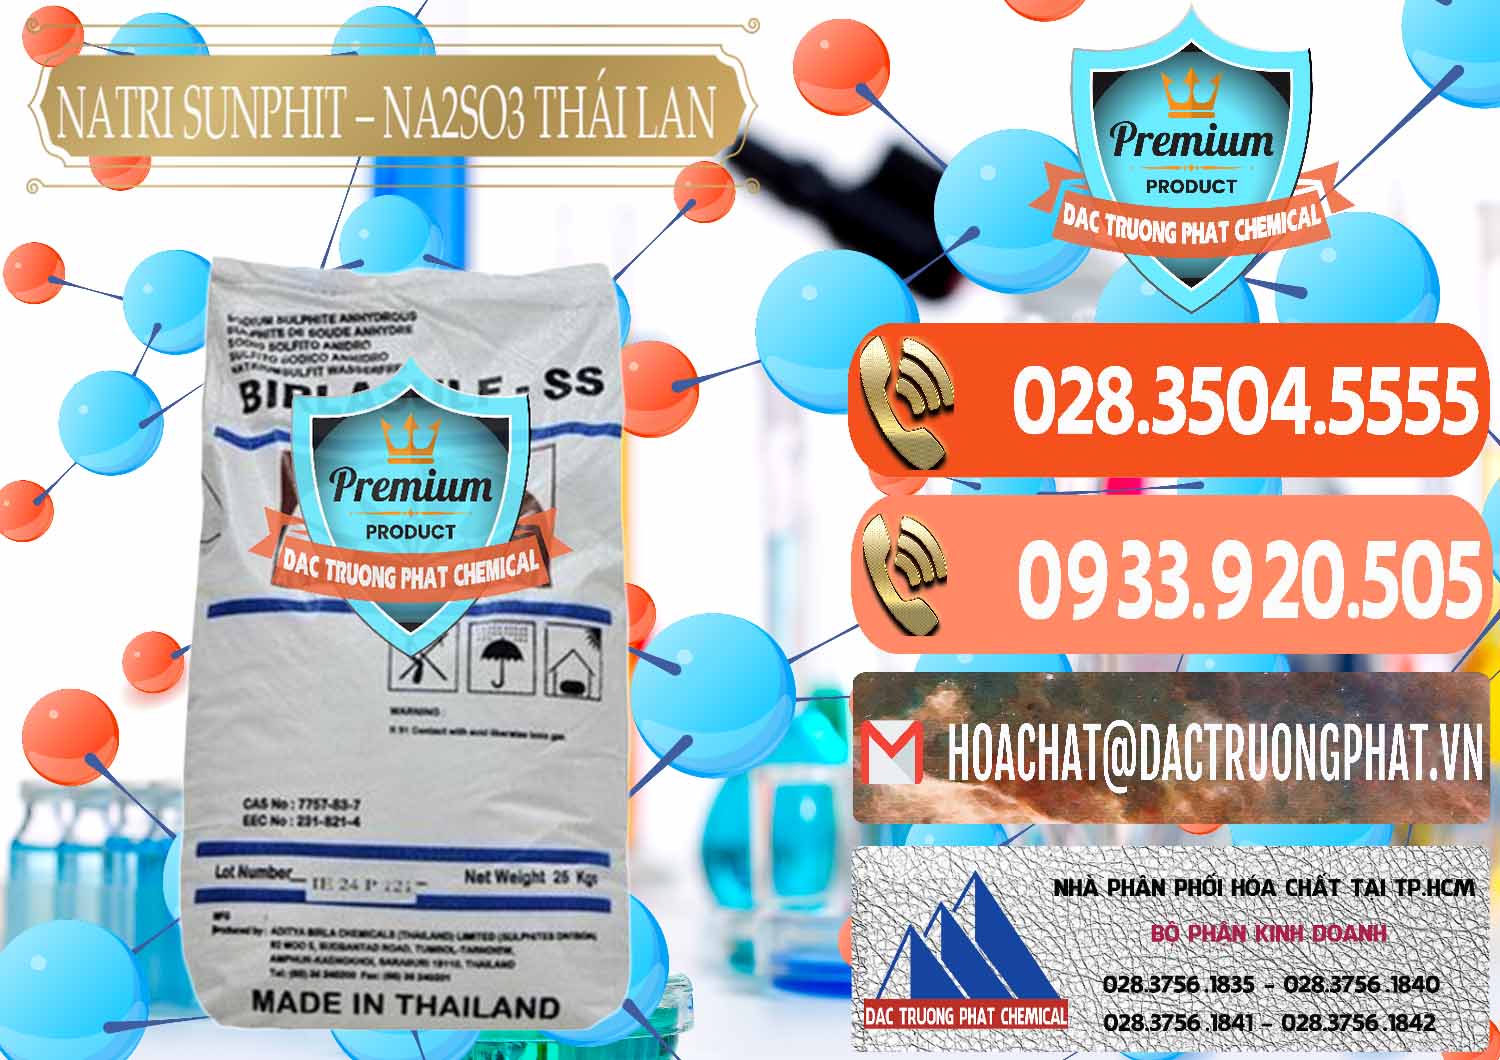 Đơn vị kinh doanh và bán Natri Sunphit - NA2SO3 Thái Lan - 0105 - Chuyên kinh doanh ( cung cấp ) hóa chất tại TP.HCM - hoachatmientay.com